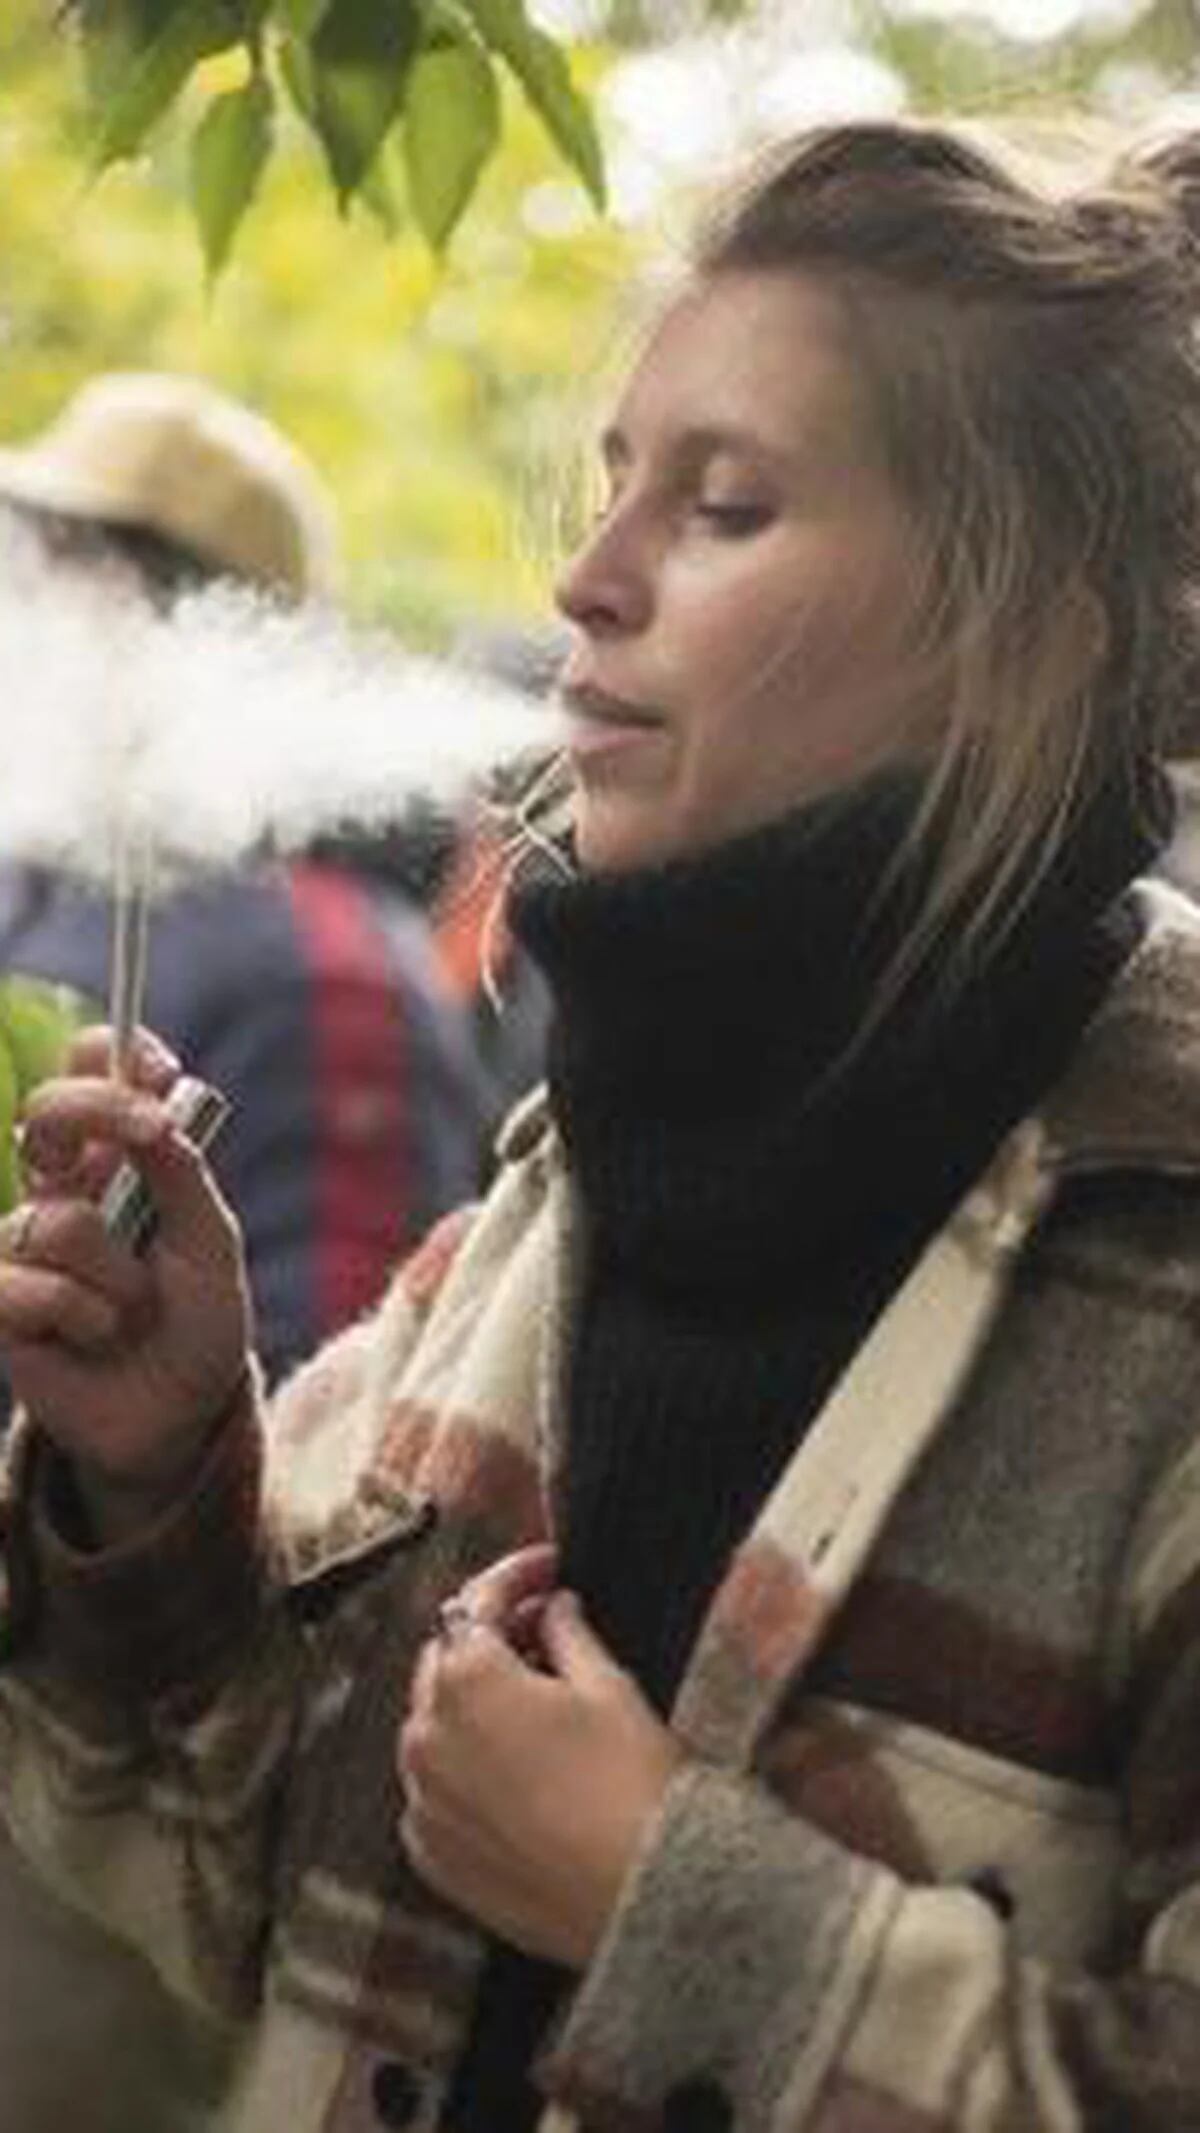 Fumar marihuana puede ser peor para los pulmones que los cigarrillos, según  un estudio - Southern Iowa Mental Health Center